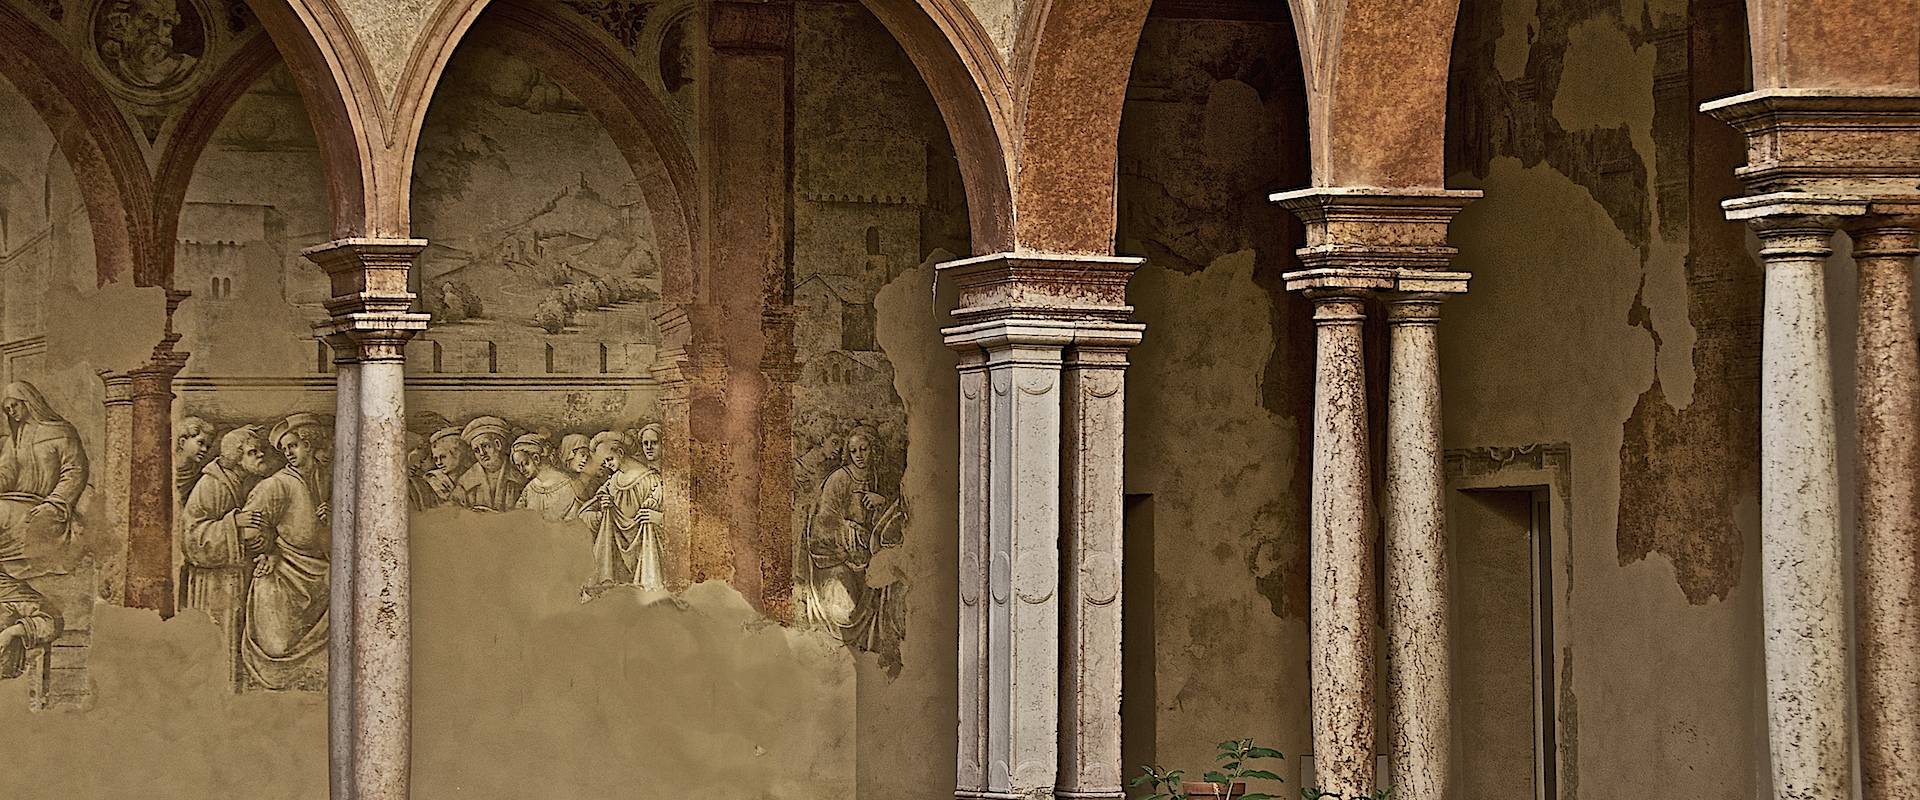 Affreschi nel porticato dei Chiostri di San Pietro photo by Caba2011